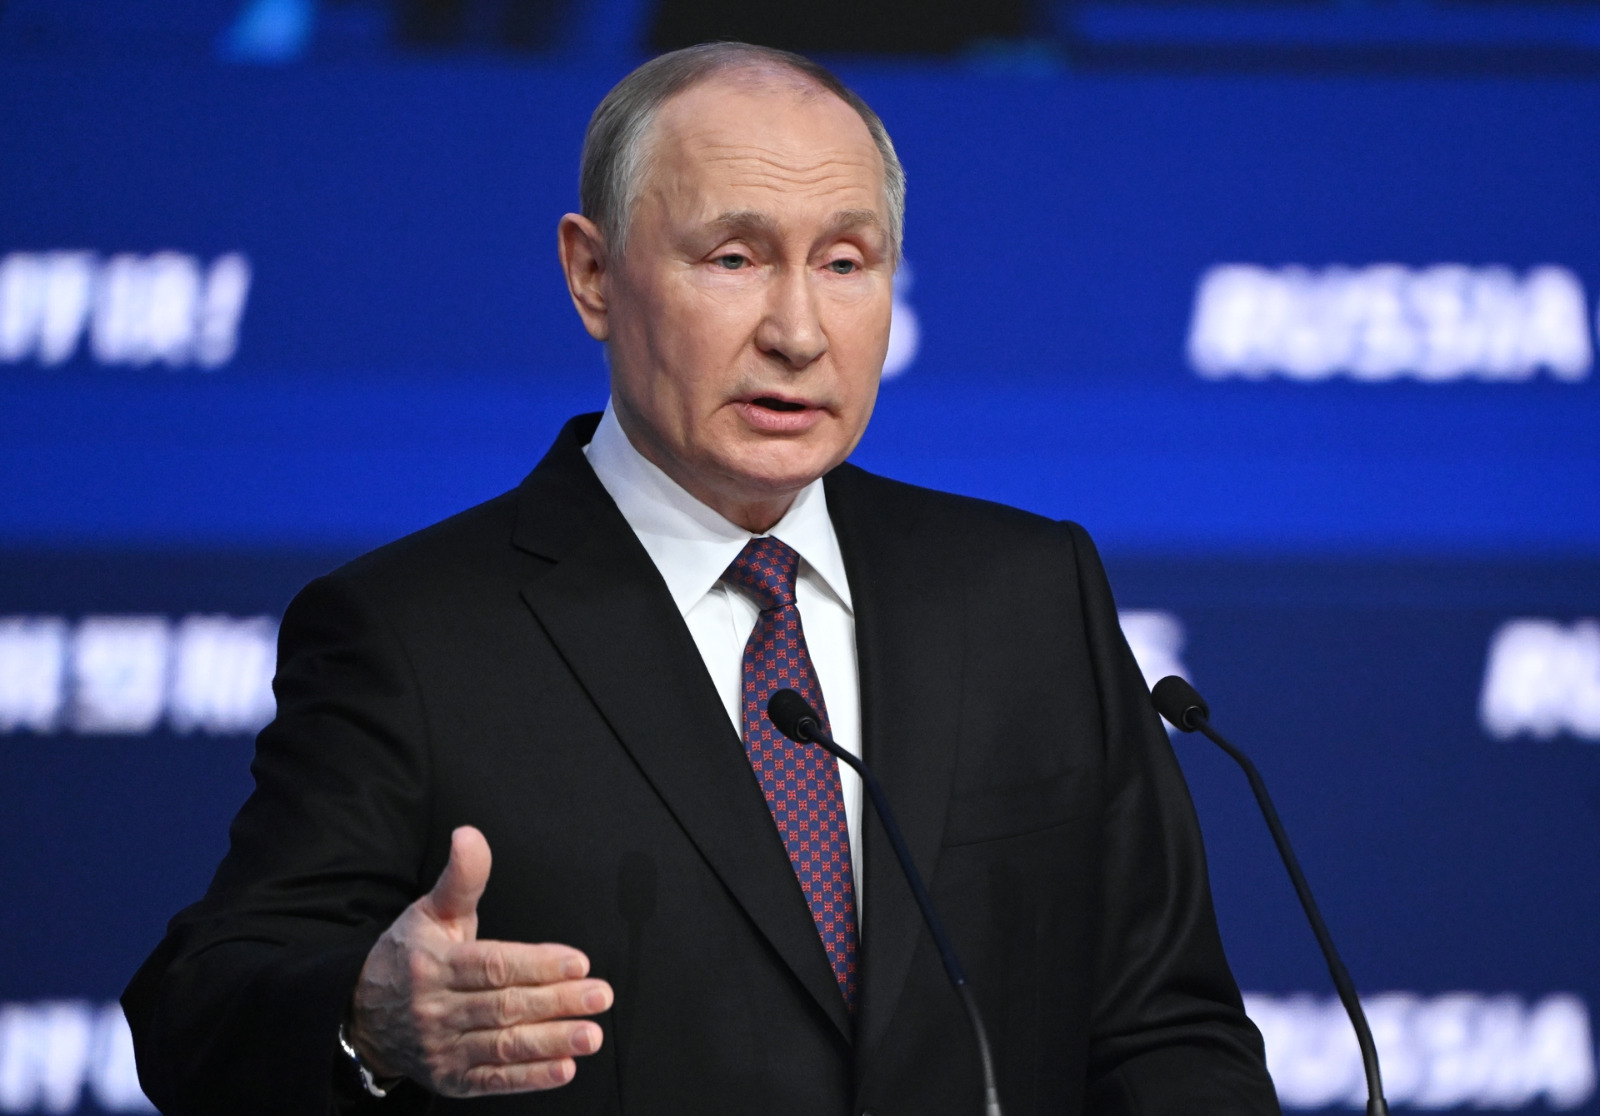 BREAKING NEWS: Vladimir Putin Umumkan Pencalonan Diri kembali Sebagai Presiden Rusia